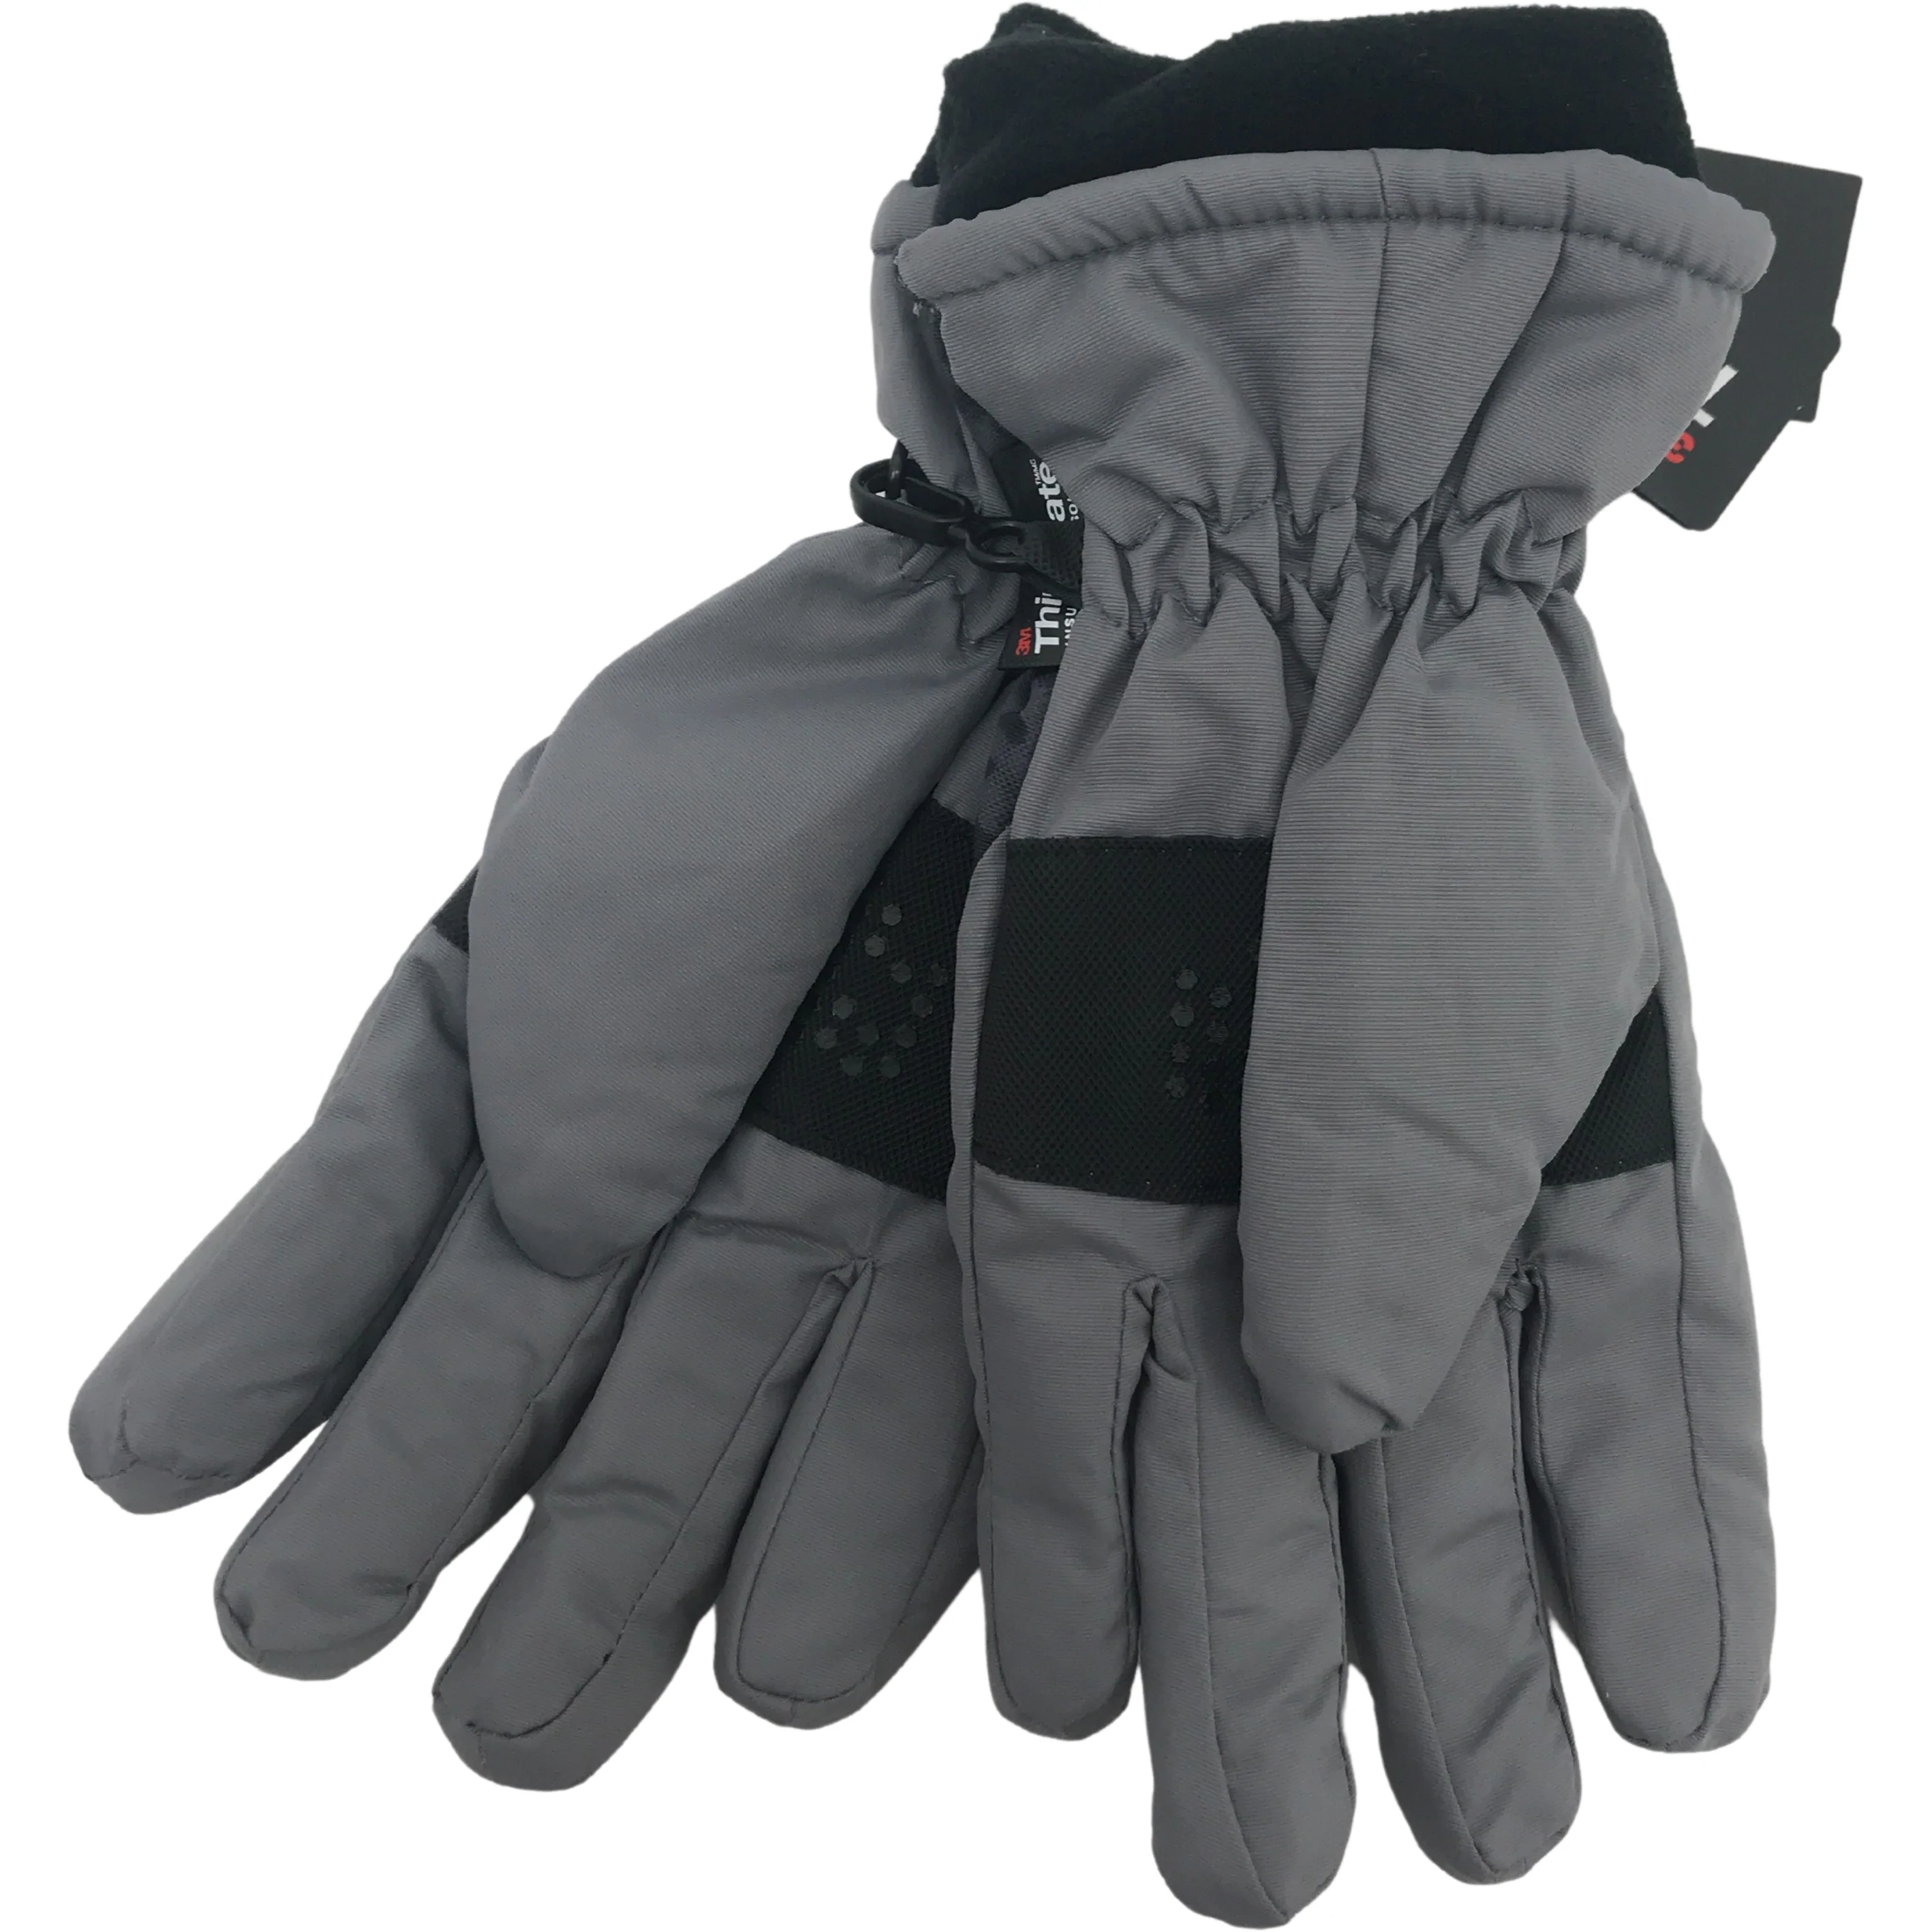 Minus Zero Children's Winter Gloves / Boy's Gloves / Grey with Camo / Size 8-20